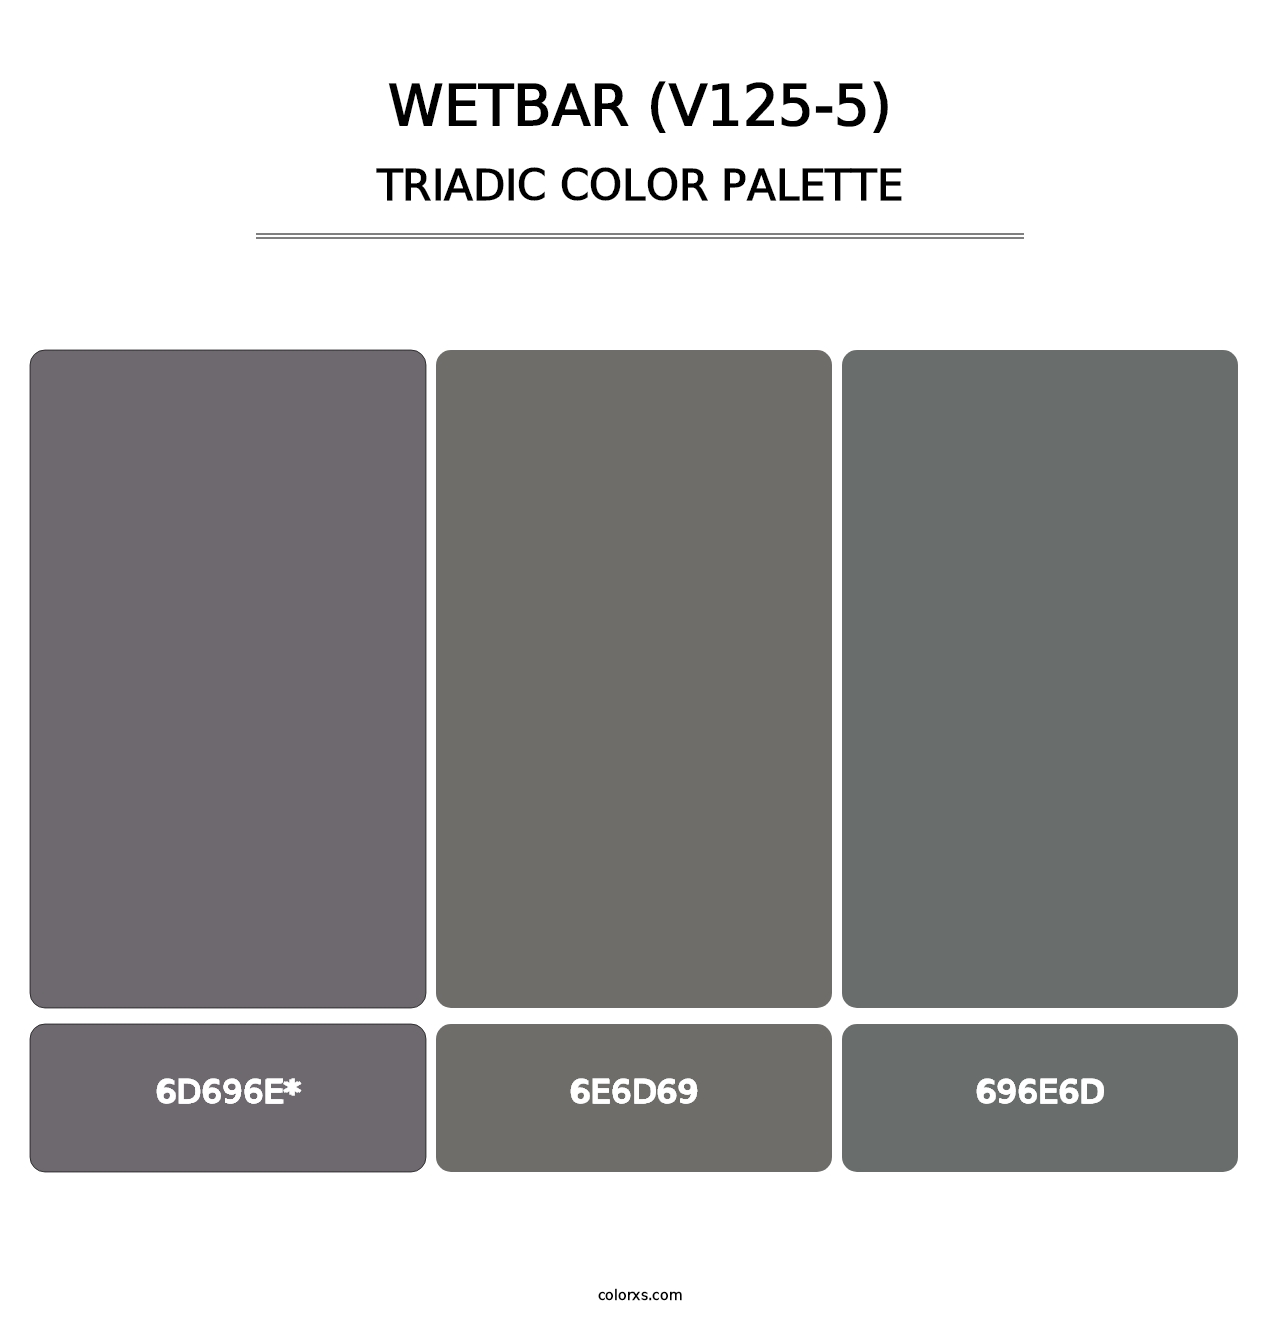 Wetbar (V125-5) - Triadic Color Palette